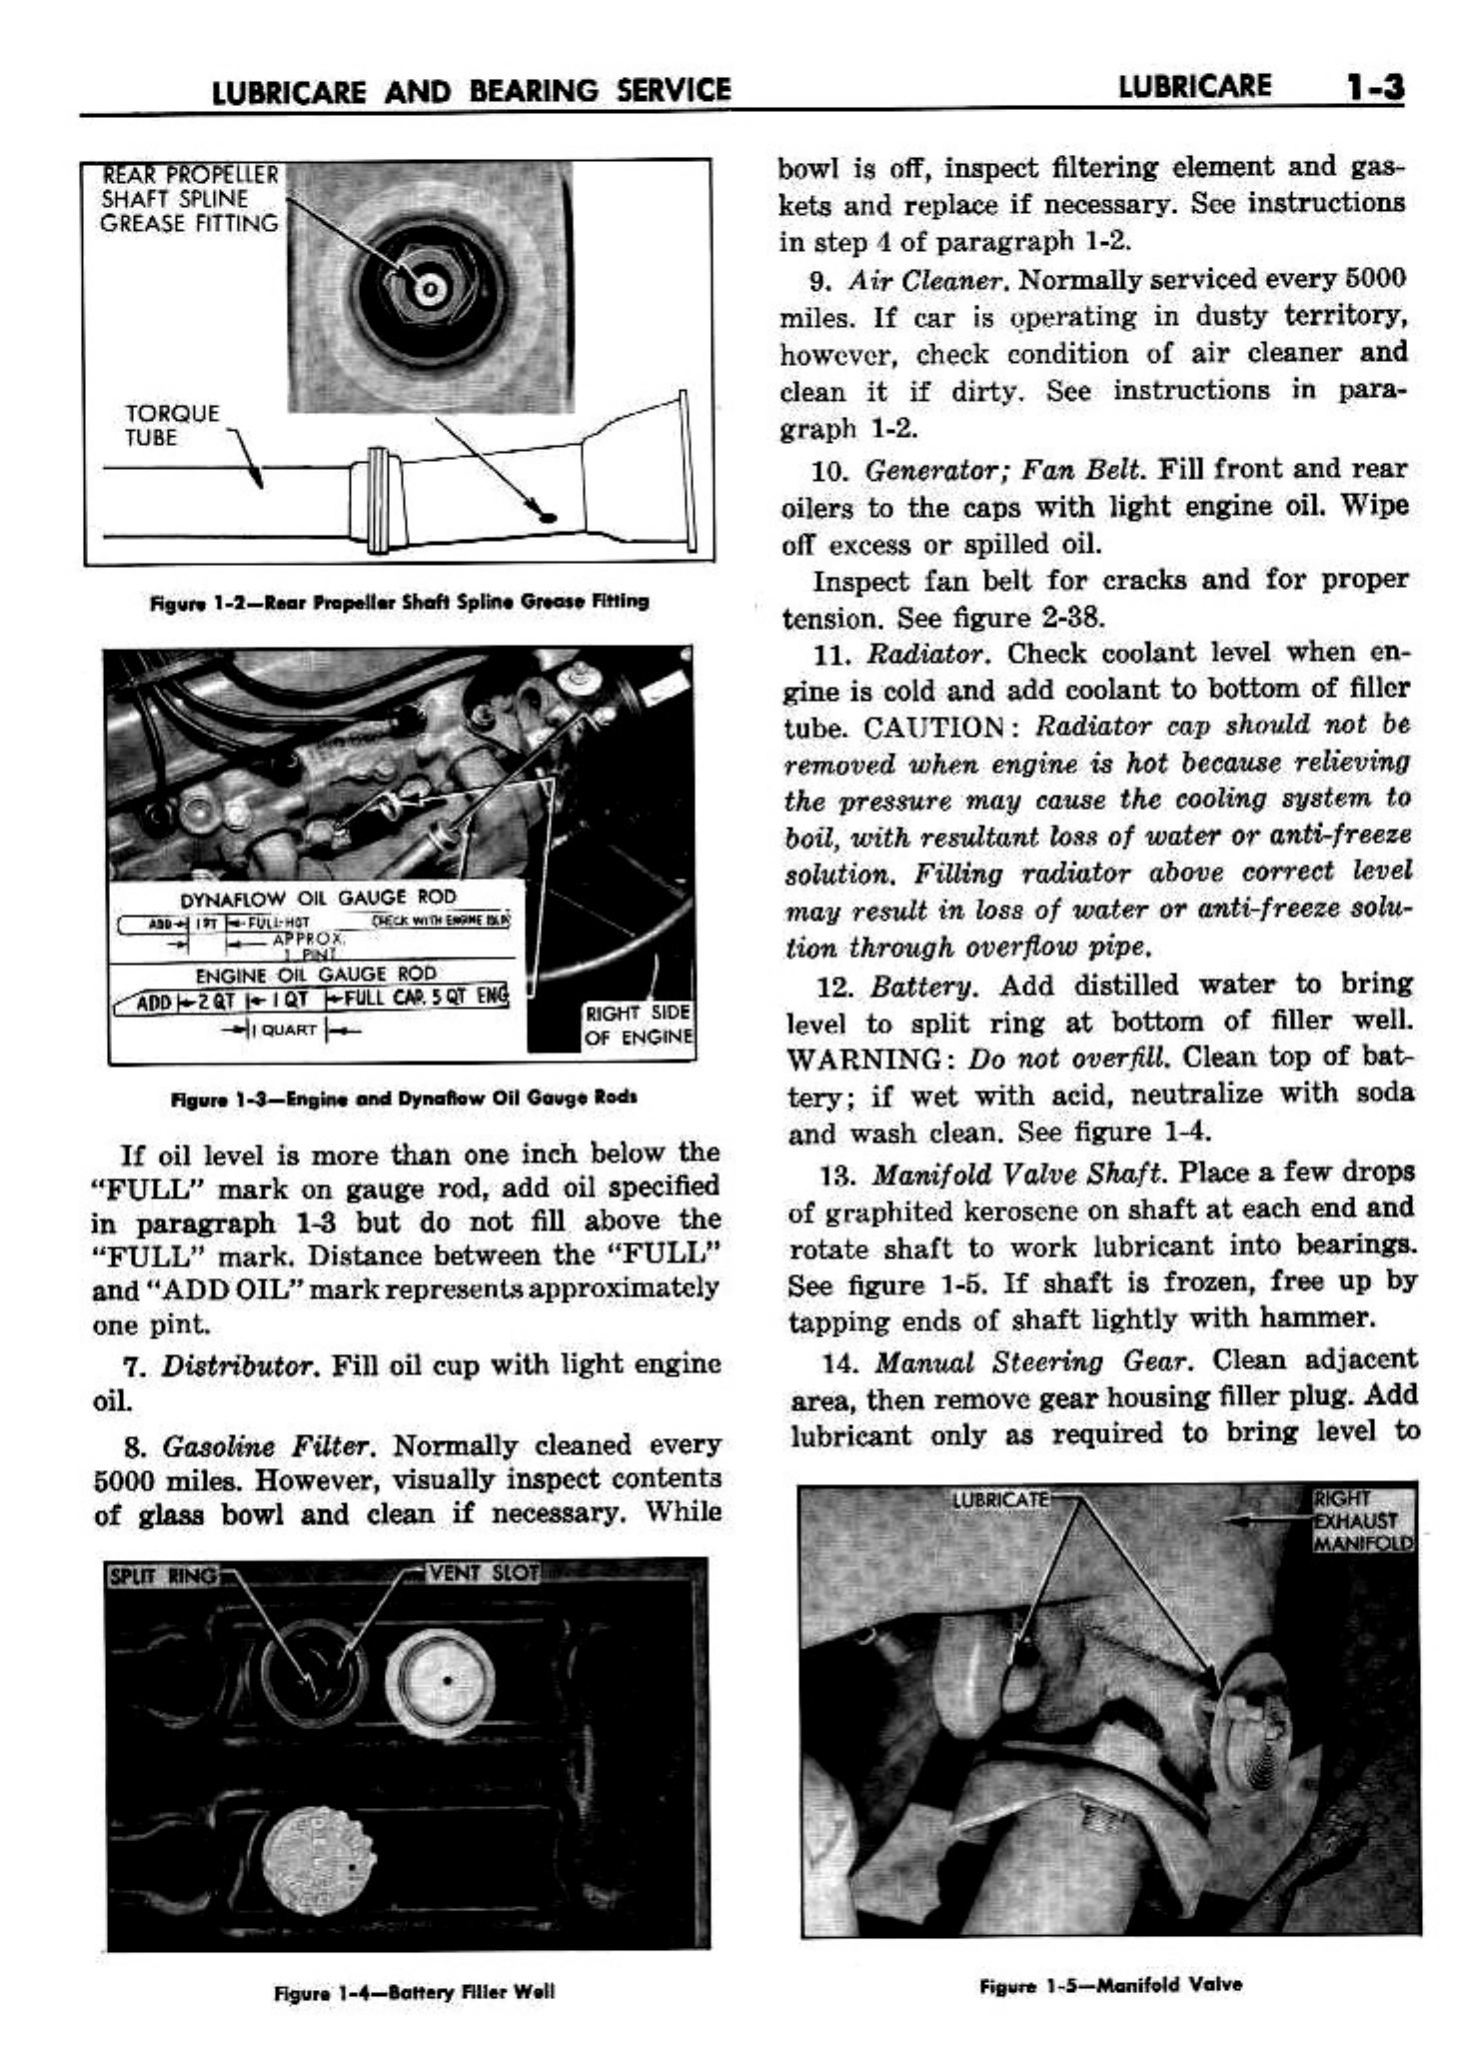 n_02 1958 Buick Shop Manual - Lubricare_3.jpg